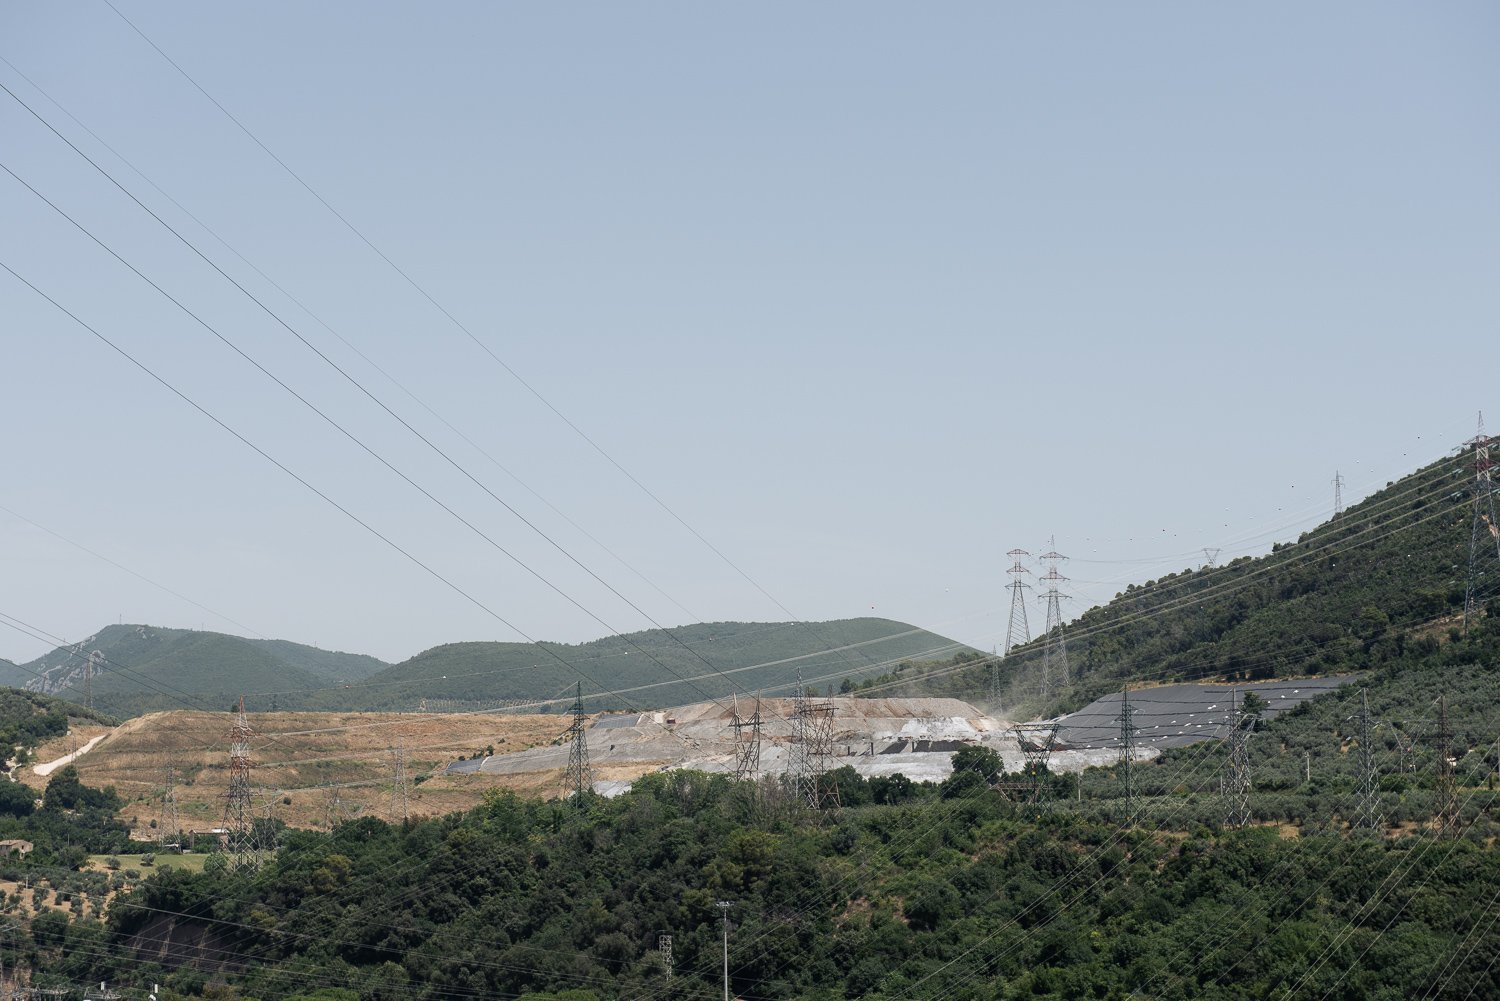  Discarica delle scorie di lavorazione dell’acciaieria in zona Pentima Alta. Terni (Terni), 2023. 